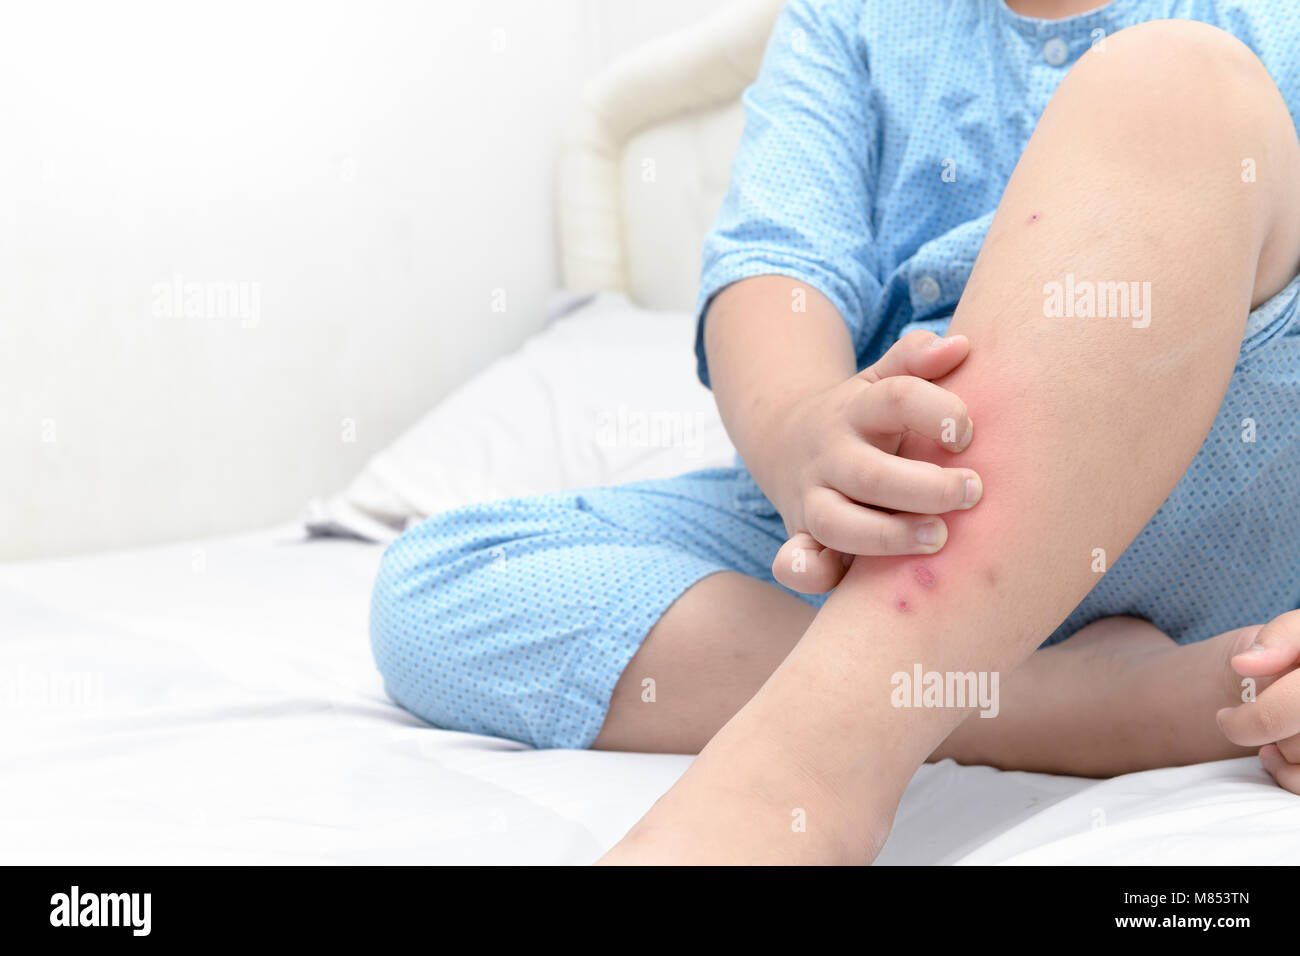 Le grattage à la main ,les jambes de fat boy avec gonflement douloureux et spot ,cicatrice de moustiques piquent allergie, concept de soins de santé Banque D'Images